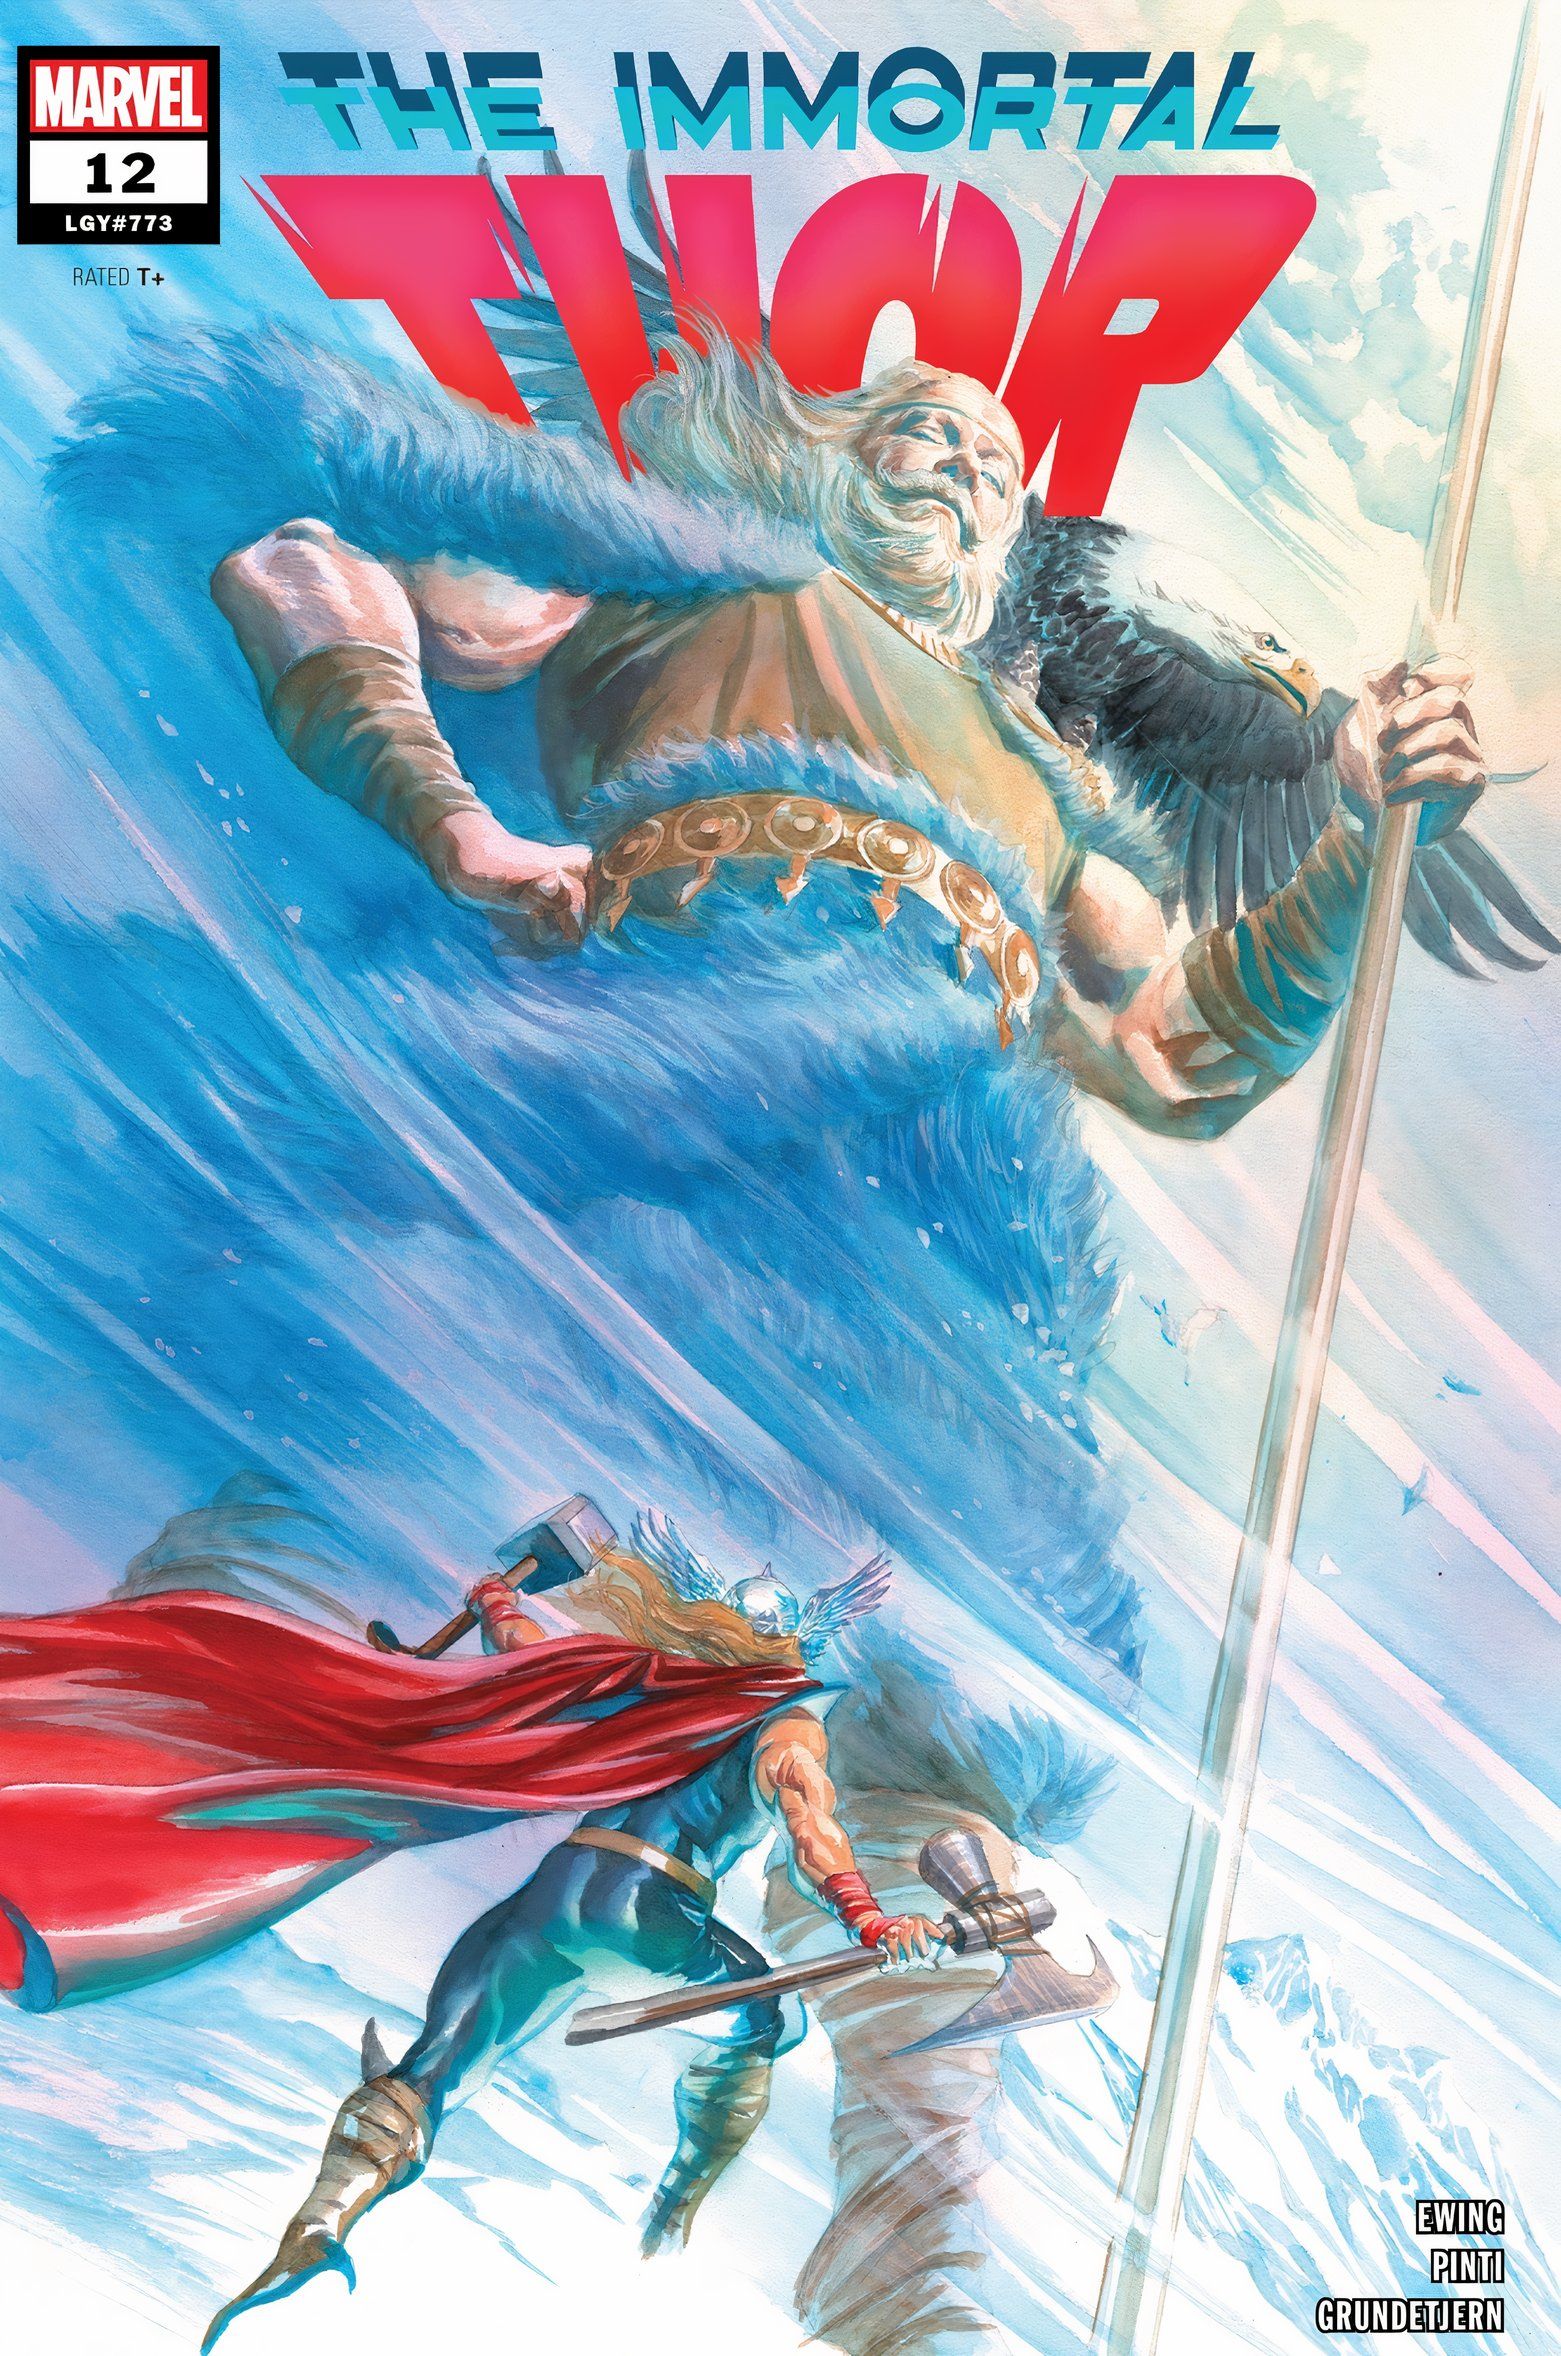 Immortal Thor nr 12 przedstawia Thora u stóp olbrzyma Utgarda-Odyna znanego jako Bari.